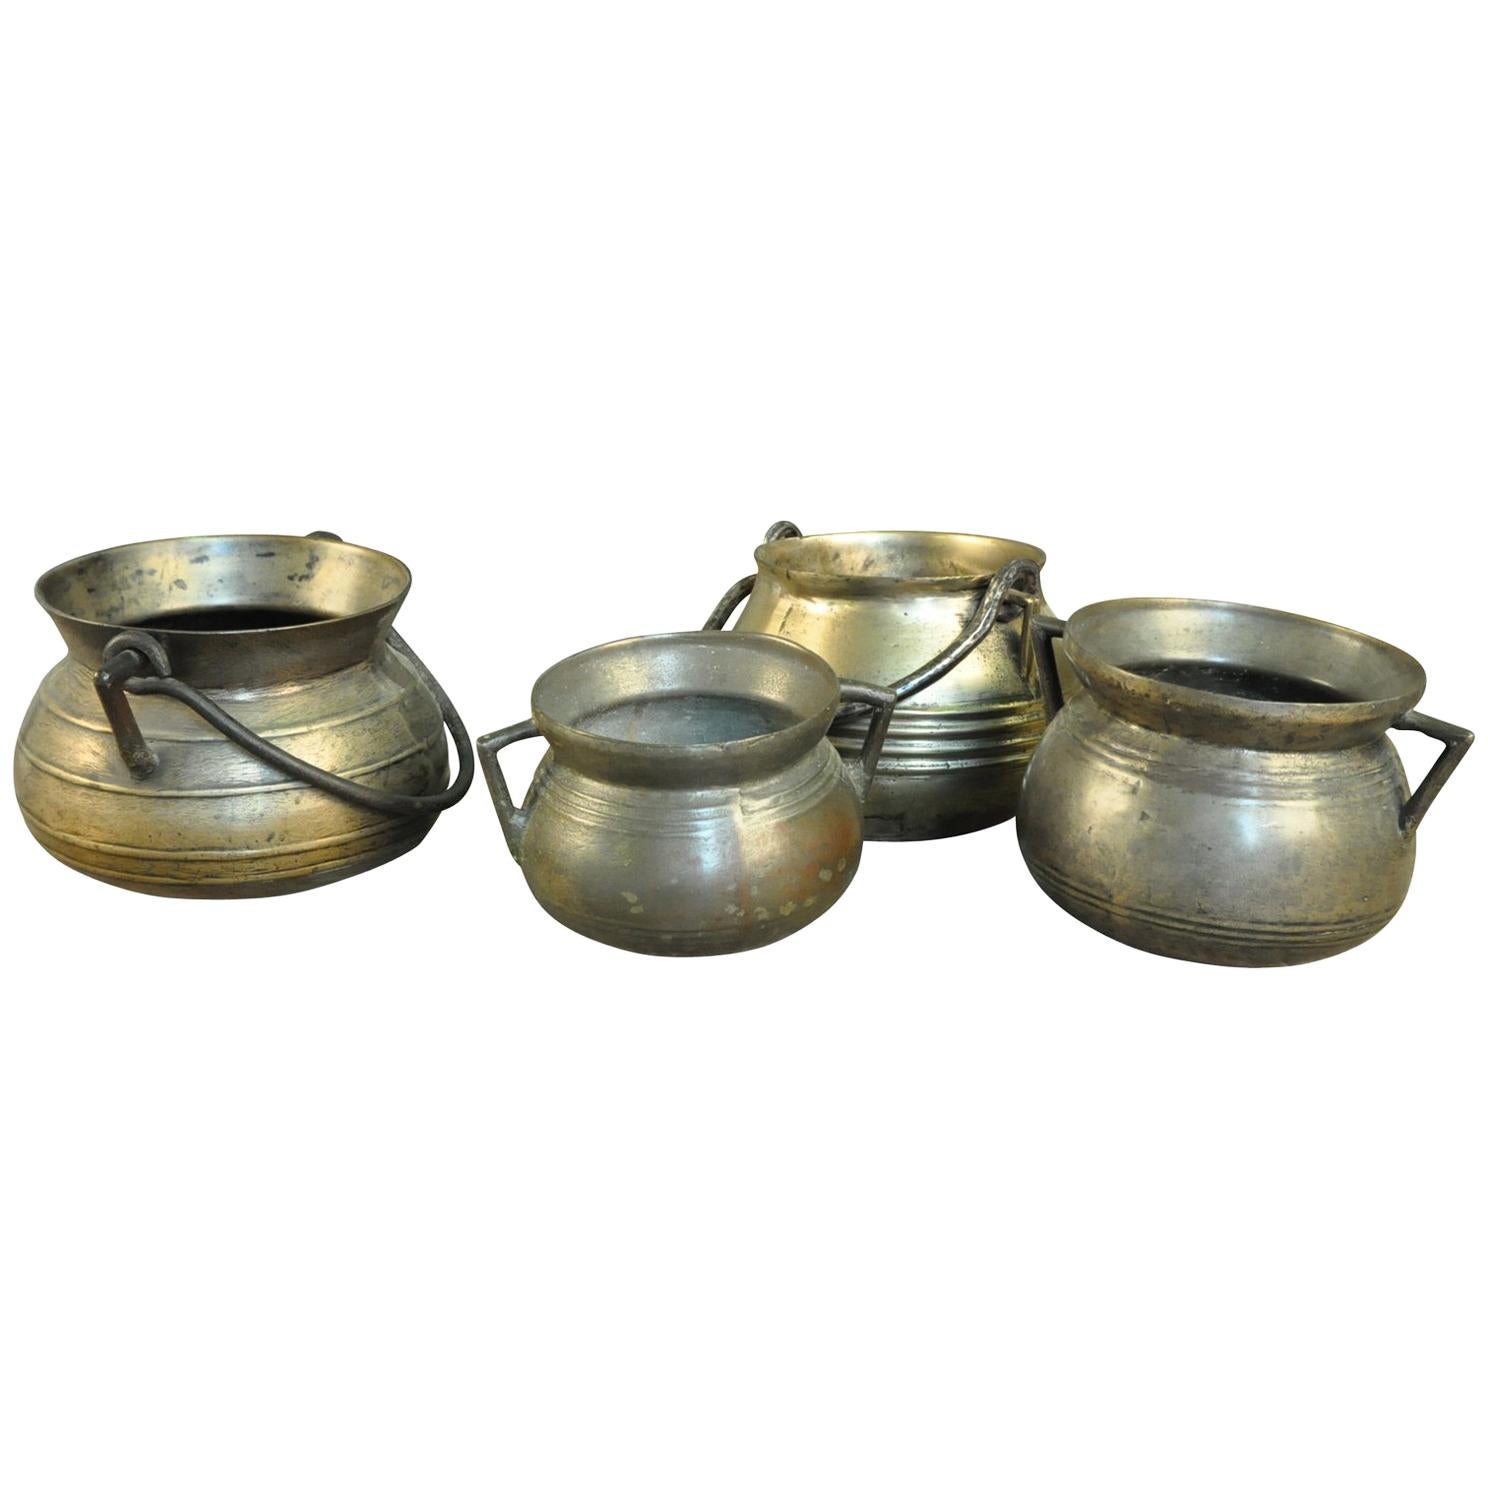 Collection de 4 Olas en bronze, pots de cuisine